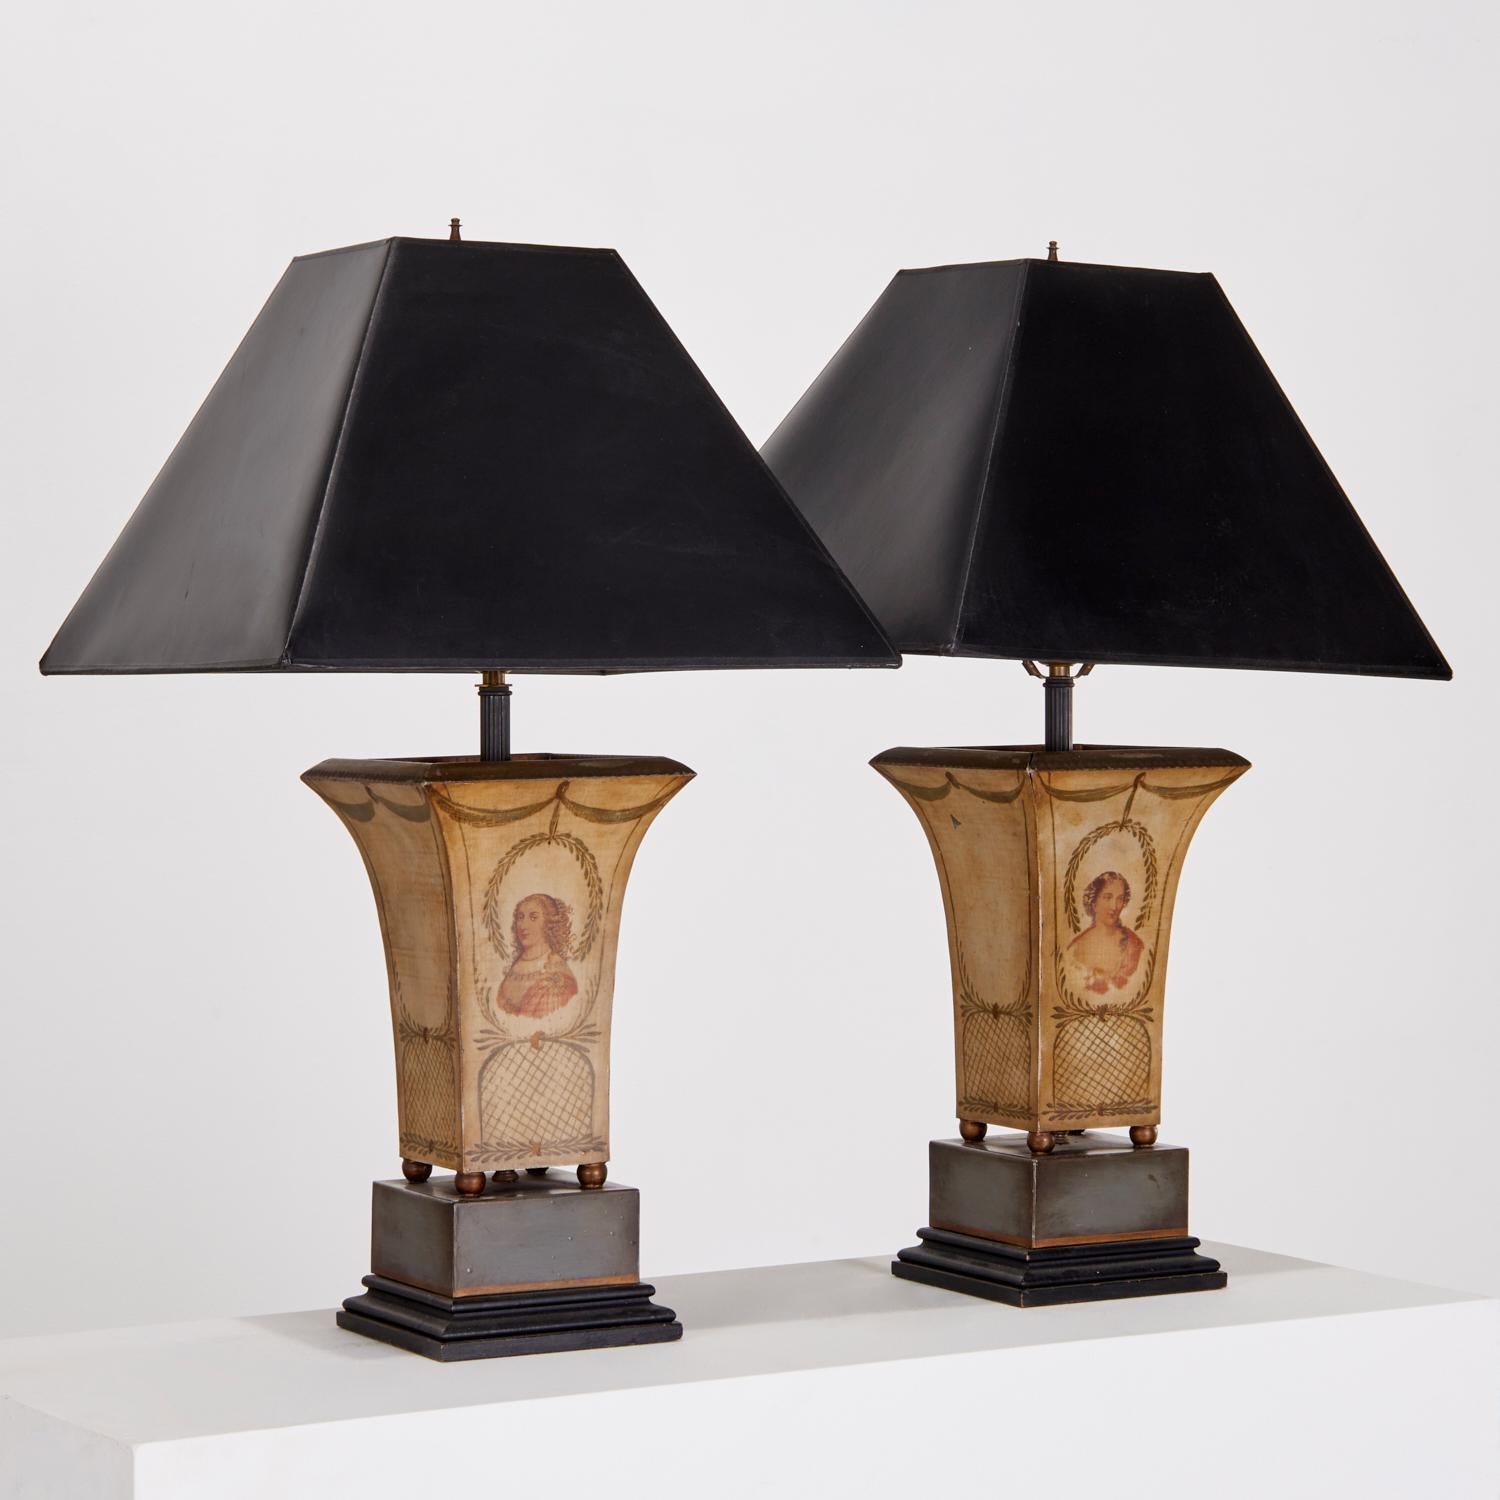 Début du 20e siècle, une paire de lampes de table en tole peinte de style Régence en tôle peinte polychrome.  Chaque lampe est décorée d'un charmant buste de femme et de bordures en treillis sur le côté opposé et d'un fond crème. Les lampes ont des